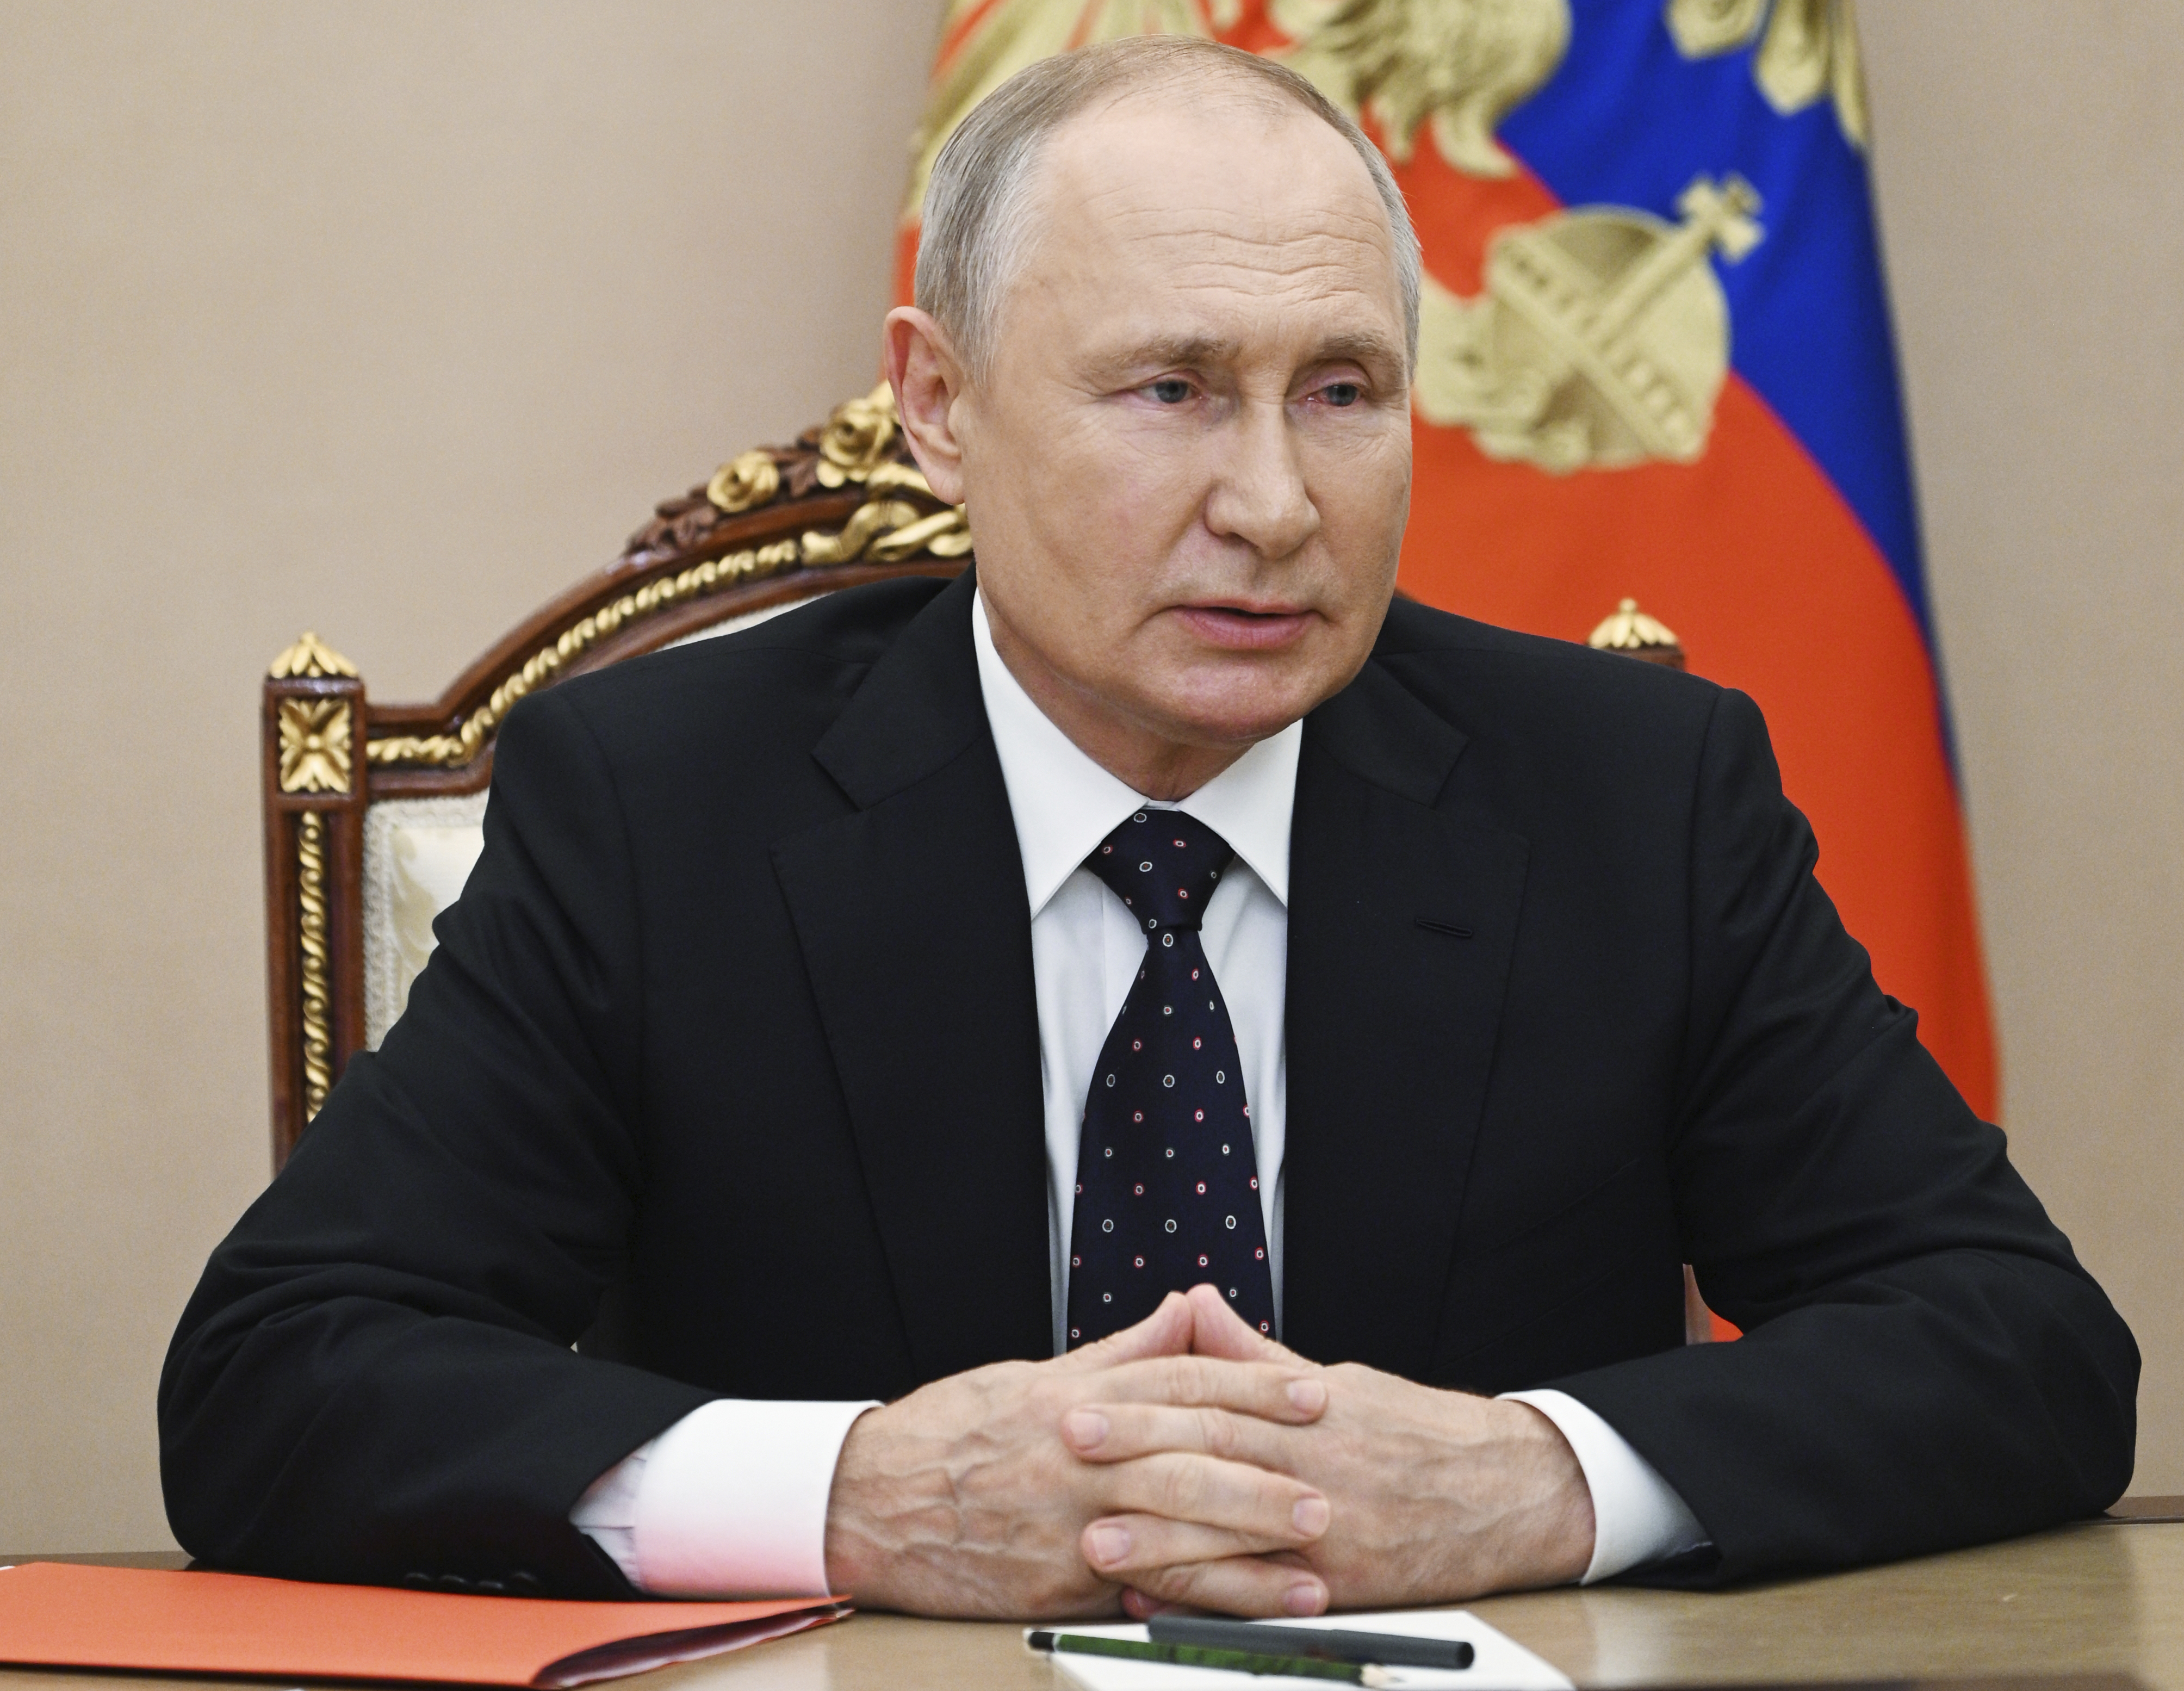 Es ist der jüngste Schlag für Putin, während der Krieg in der Ukraine tobt